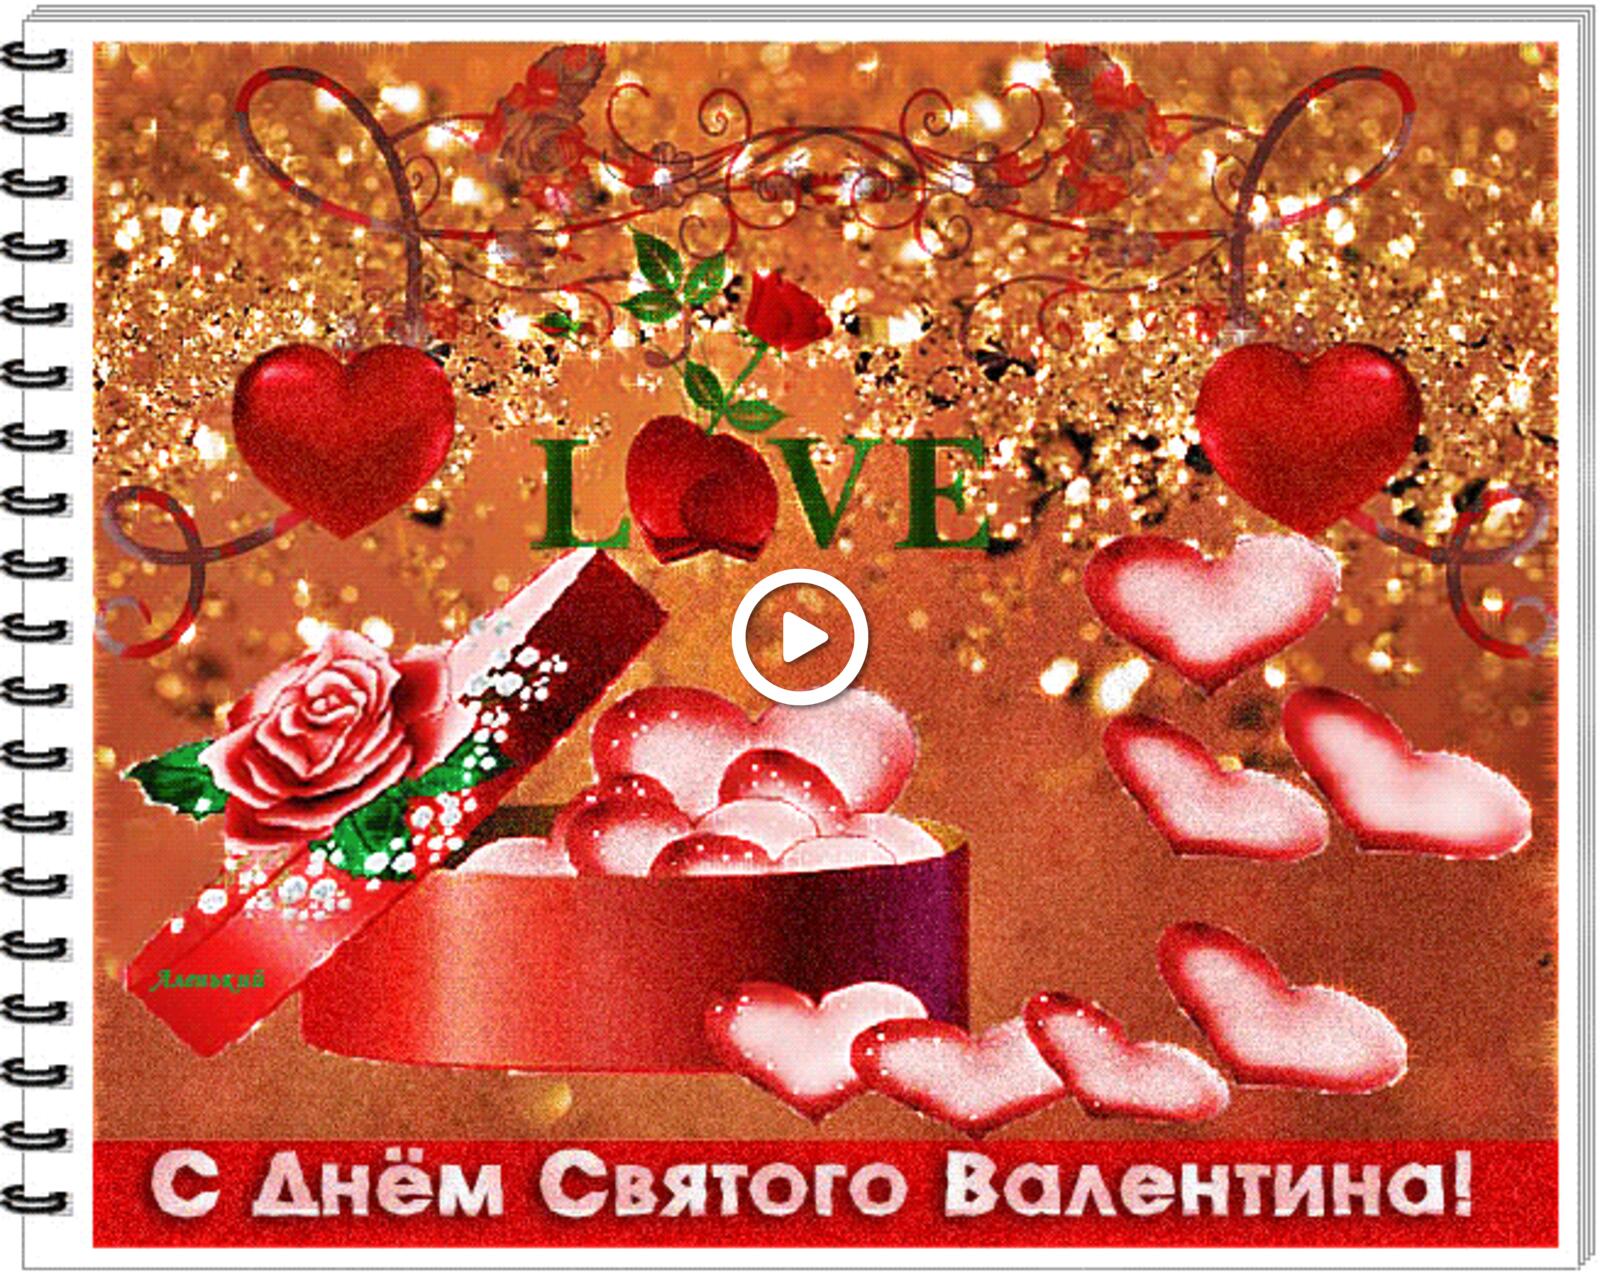 一张以心脏 节日 情人节快乐为主题的明信片